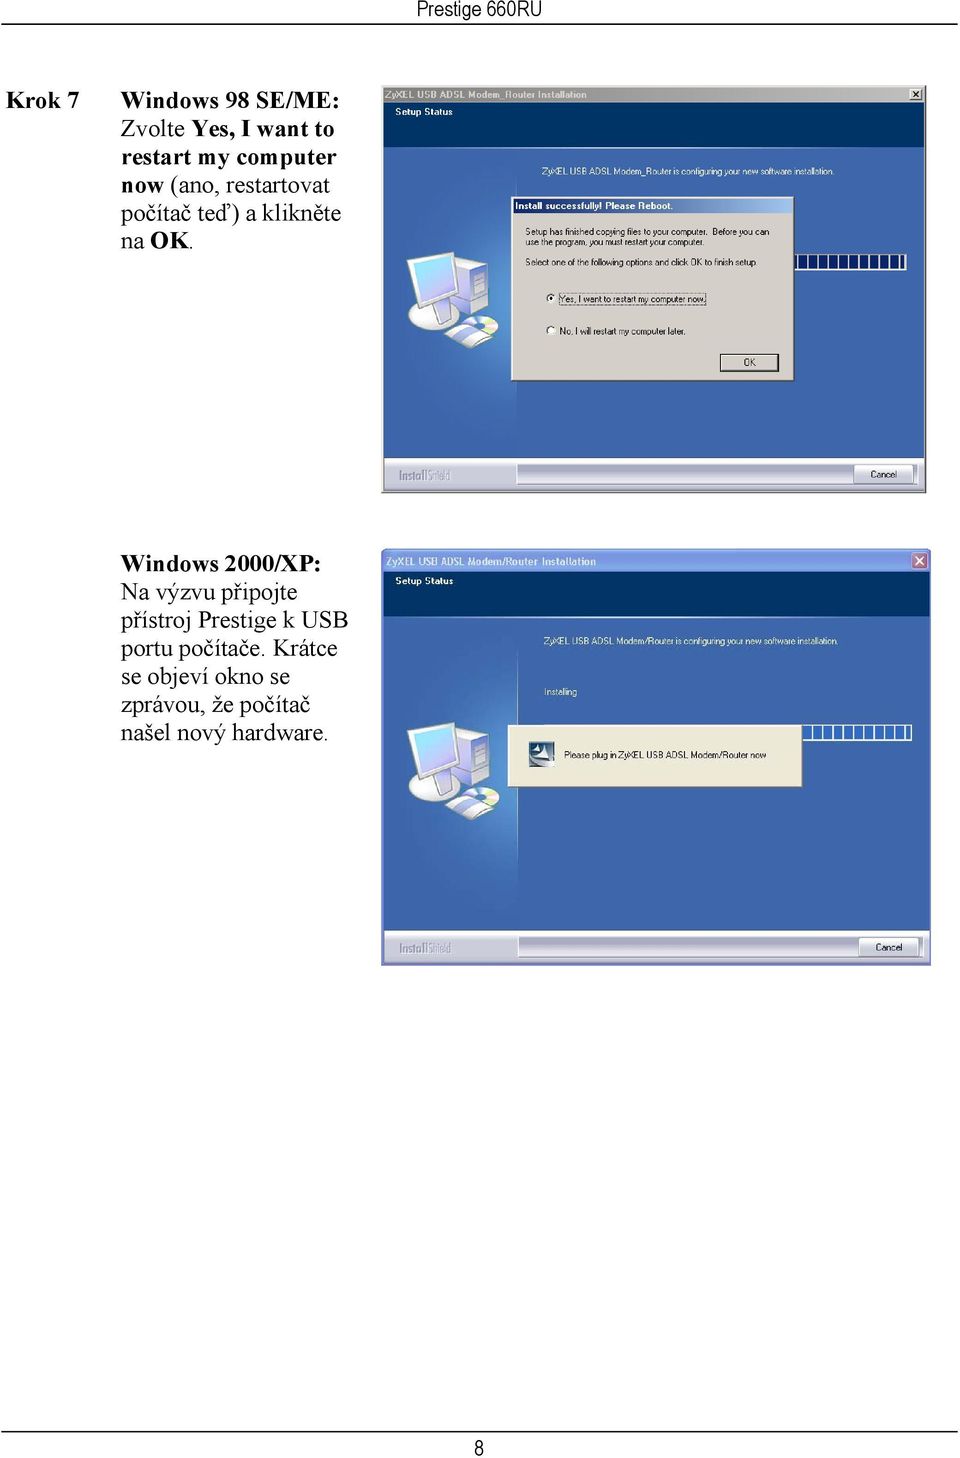 Windows 2000/XP: Na výzvu připojte přístroj Prestige k USB portu